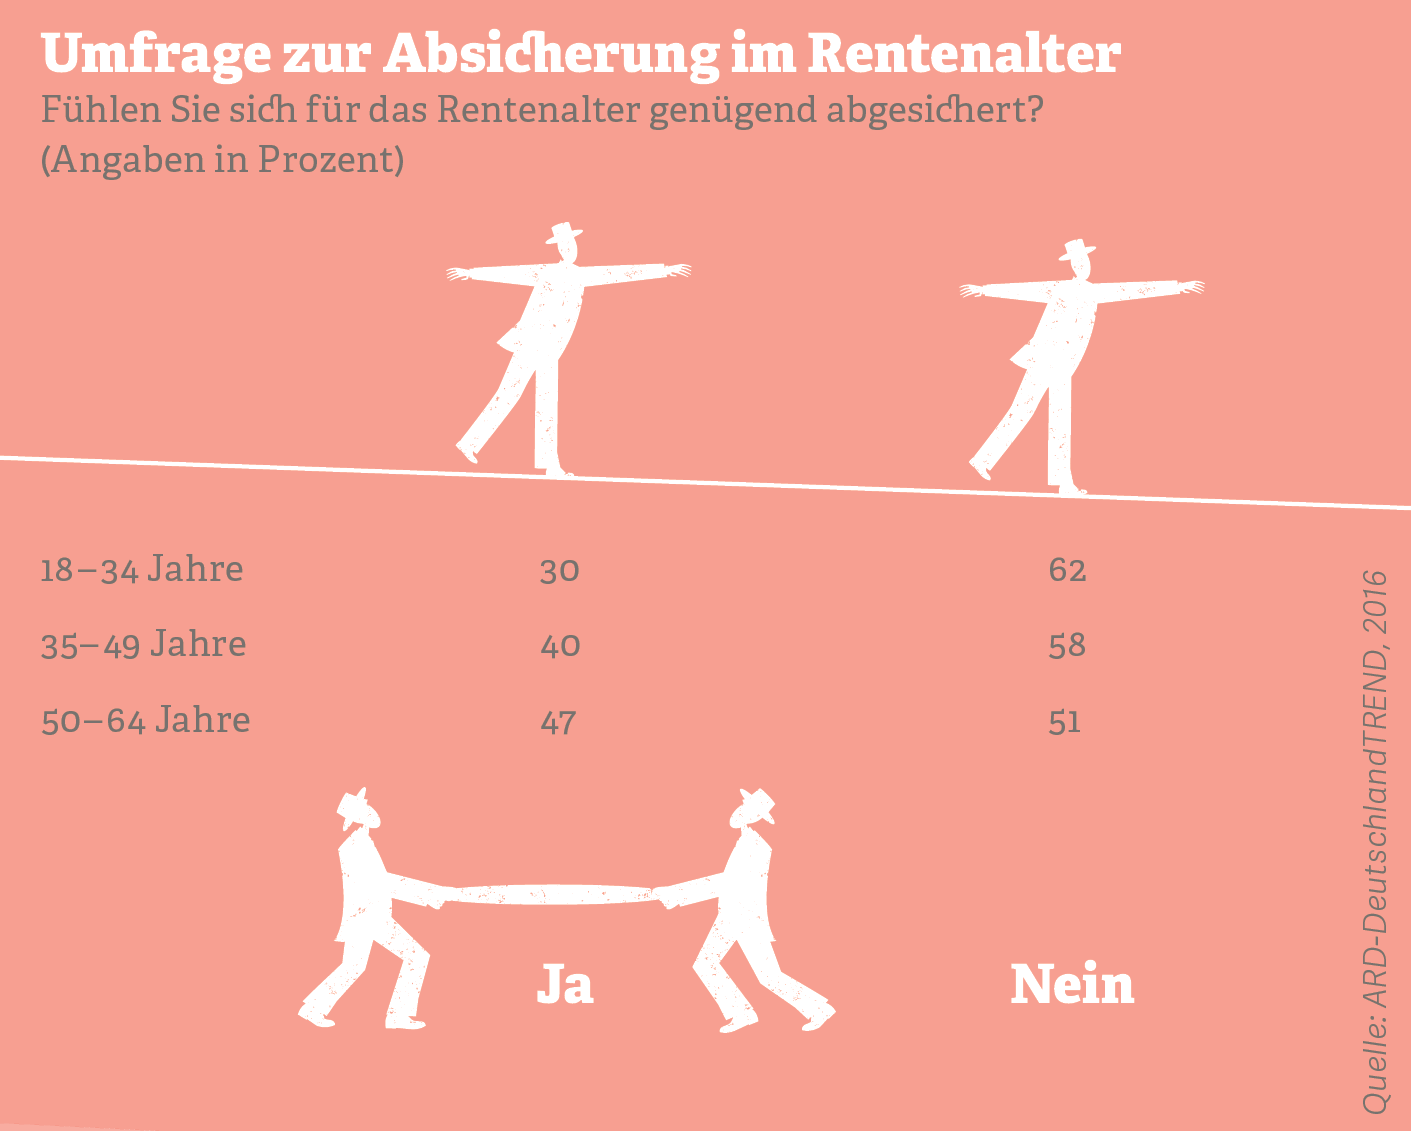  Grafik: Umfrage zur Absicherung im Rentenalter, Quelle: ARD-DeutschlandTREND, 2016